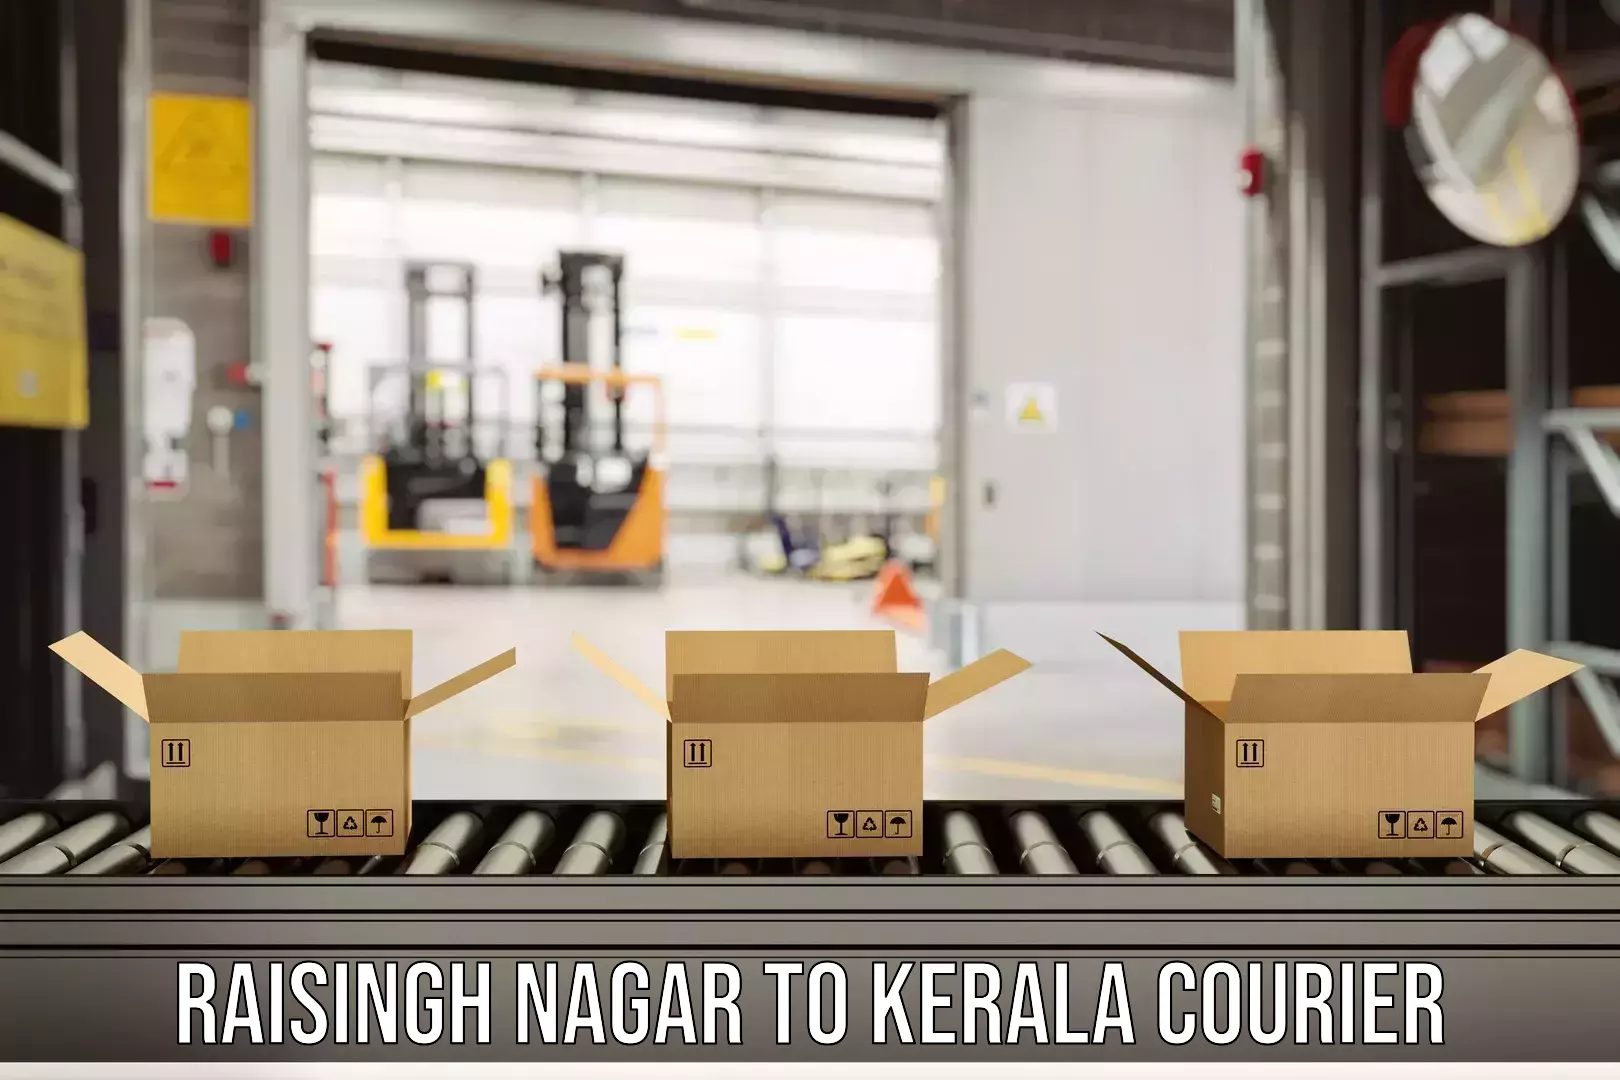 Door-to-door freight service Raisingh Nagar to Tiruvalla